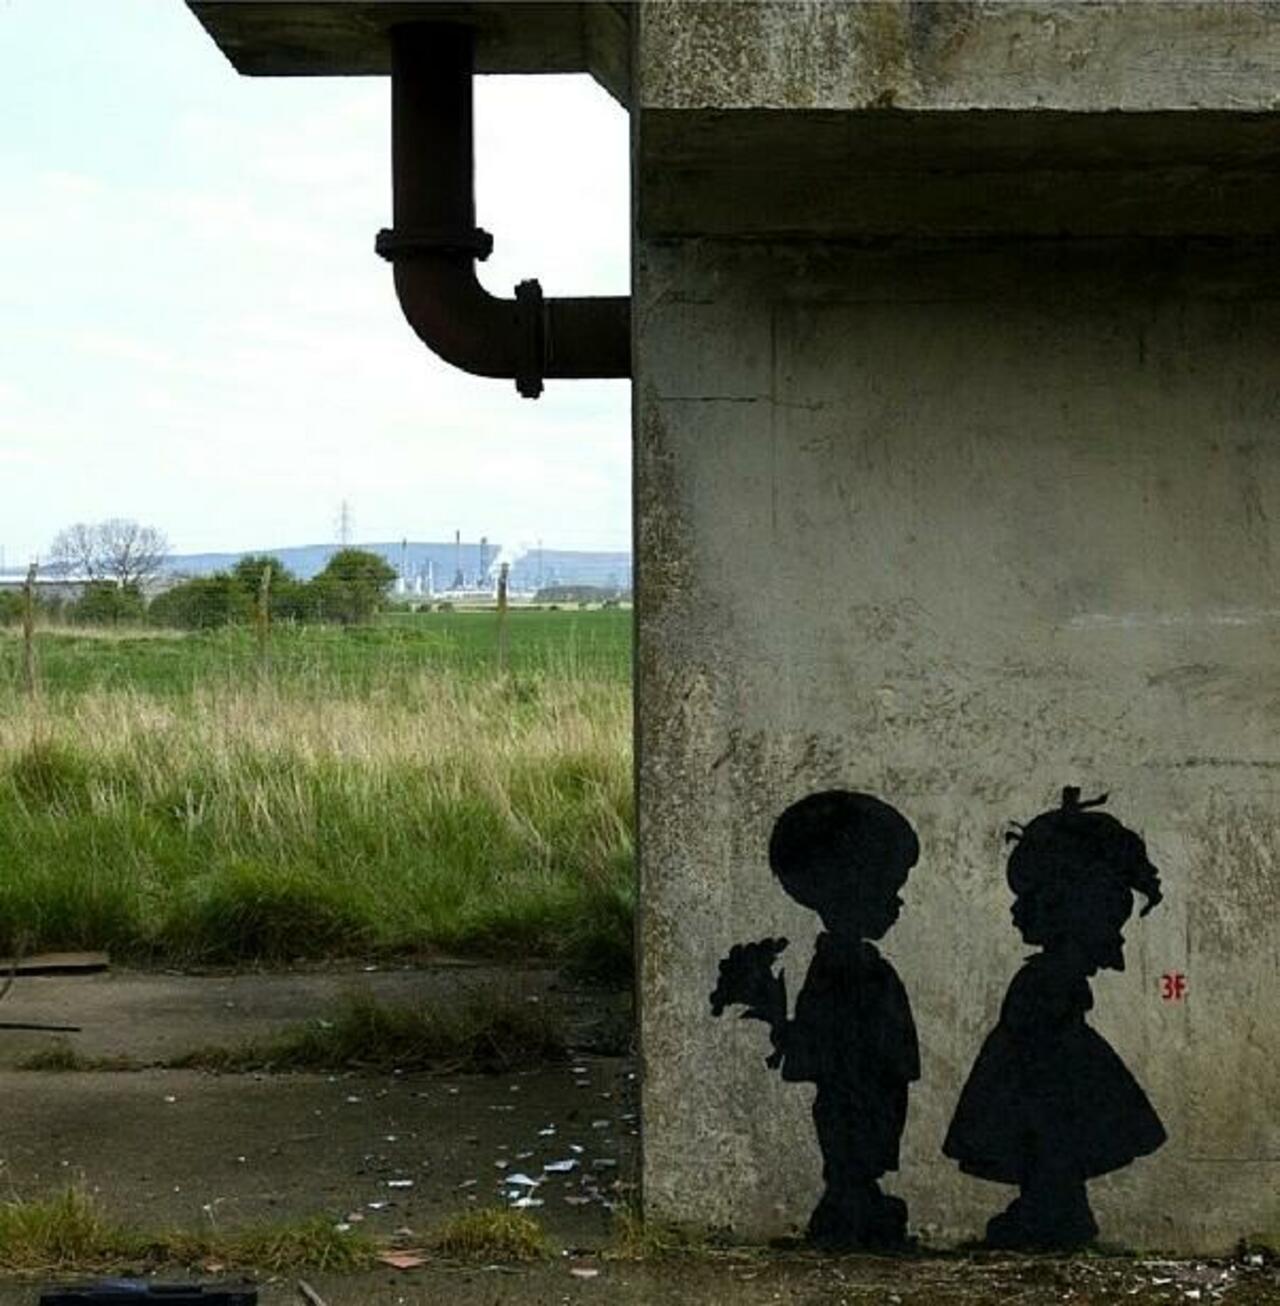 (': RT @GoogleStreetArt: Found love in a hopeless place!

Street Art by 3fountains 

#art #mural #graffiti #streetart http://t.co/6NTQDOxA9E